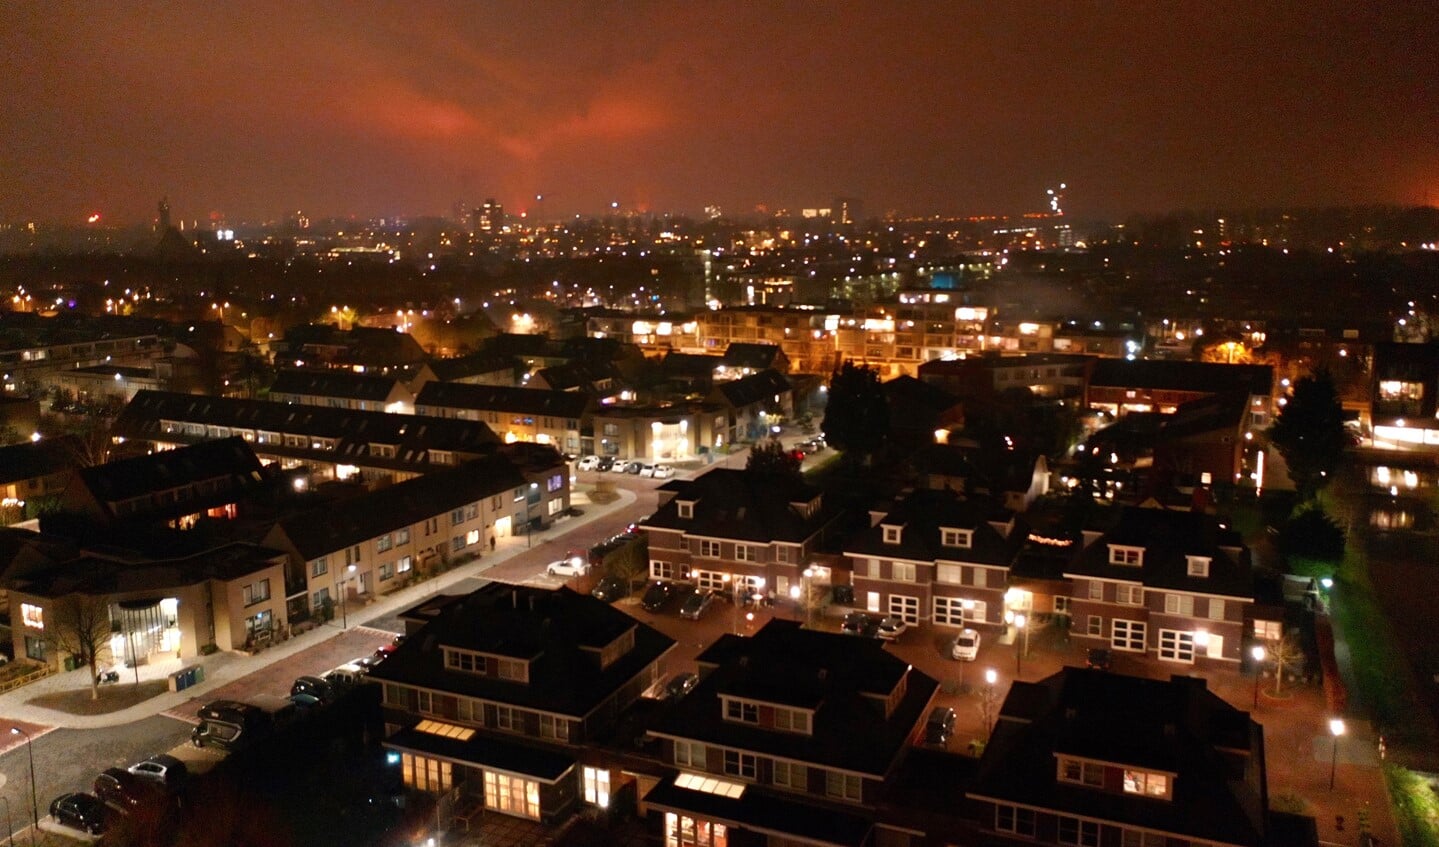 Vanuit Leidschendam was de vuurgloed zichtbaar van de uit de hand gelopen brandstapel in Scheveningen (foto: Mark-Peter Mansveld).